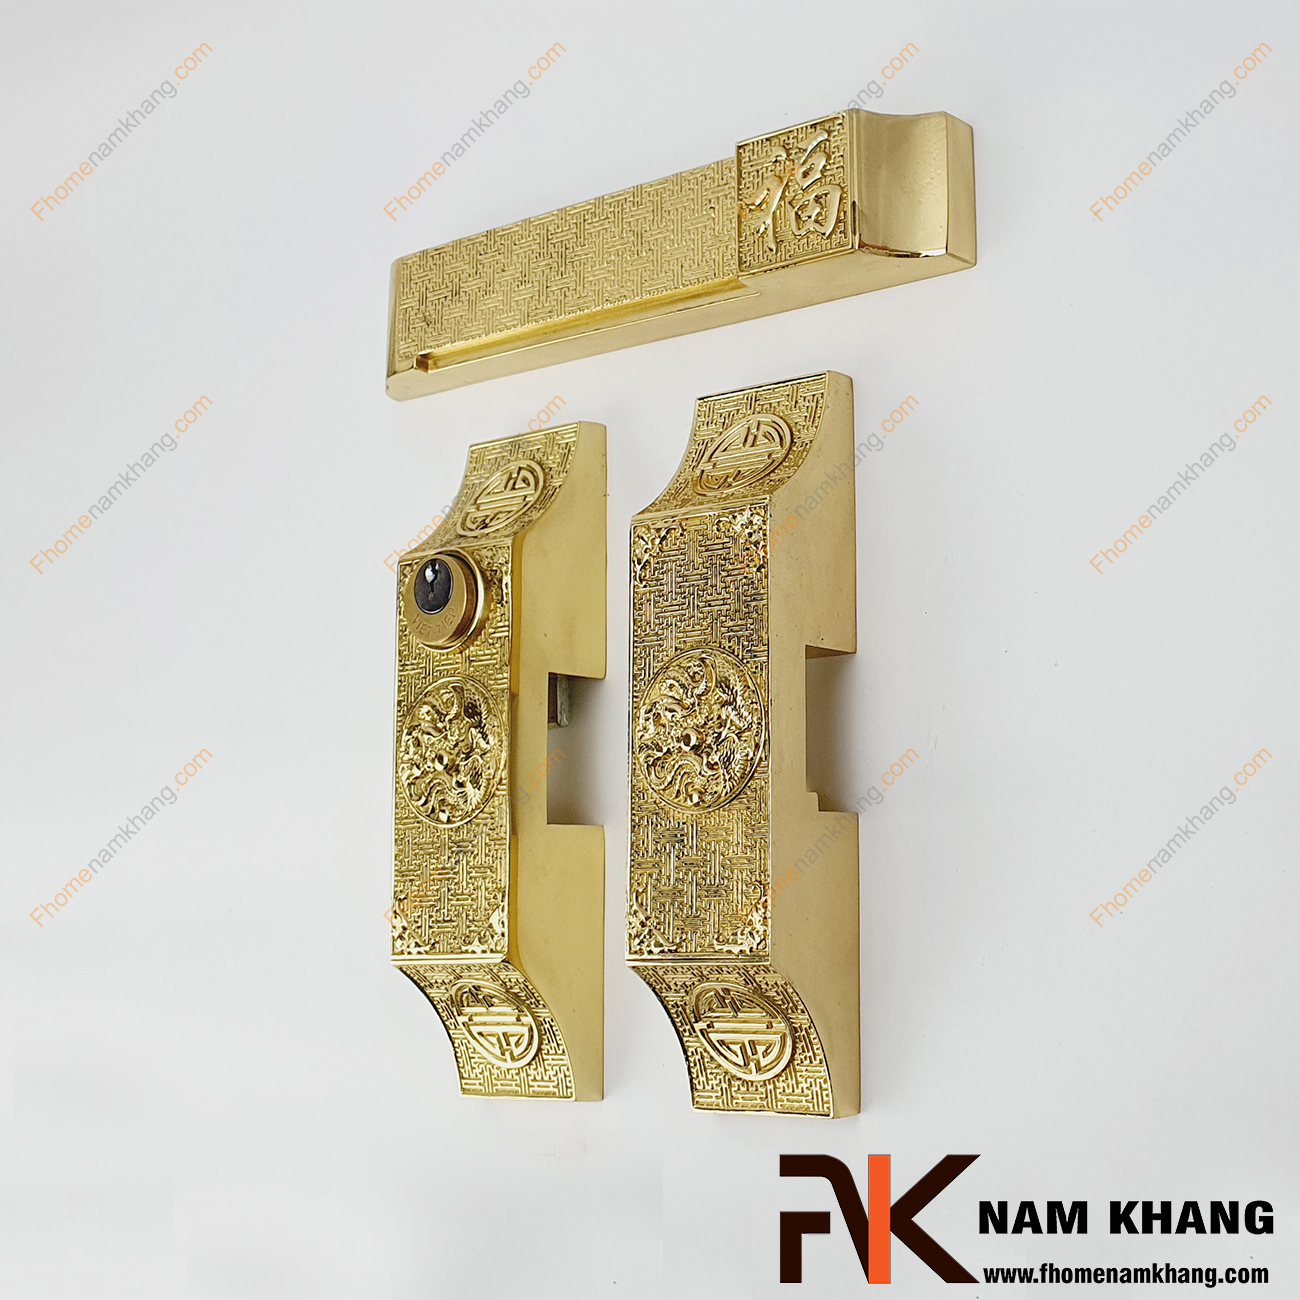 Khóa cửa bức bàn cổ điển bằng đồng cao cấp NK580-V hay còn gọi là khóa cửa bích bàn, có thiết kế theo kiểu then cài và có thanh chốt bằng đồng đúc.